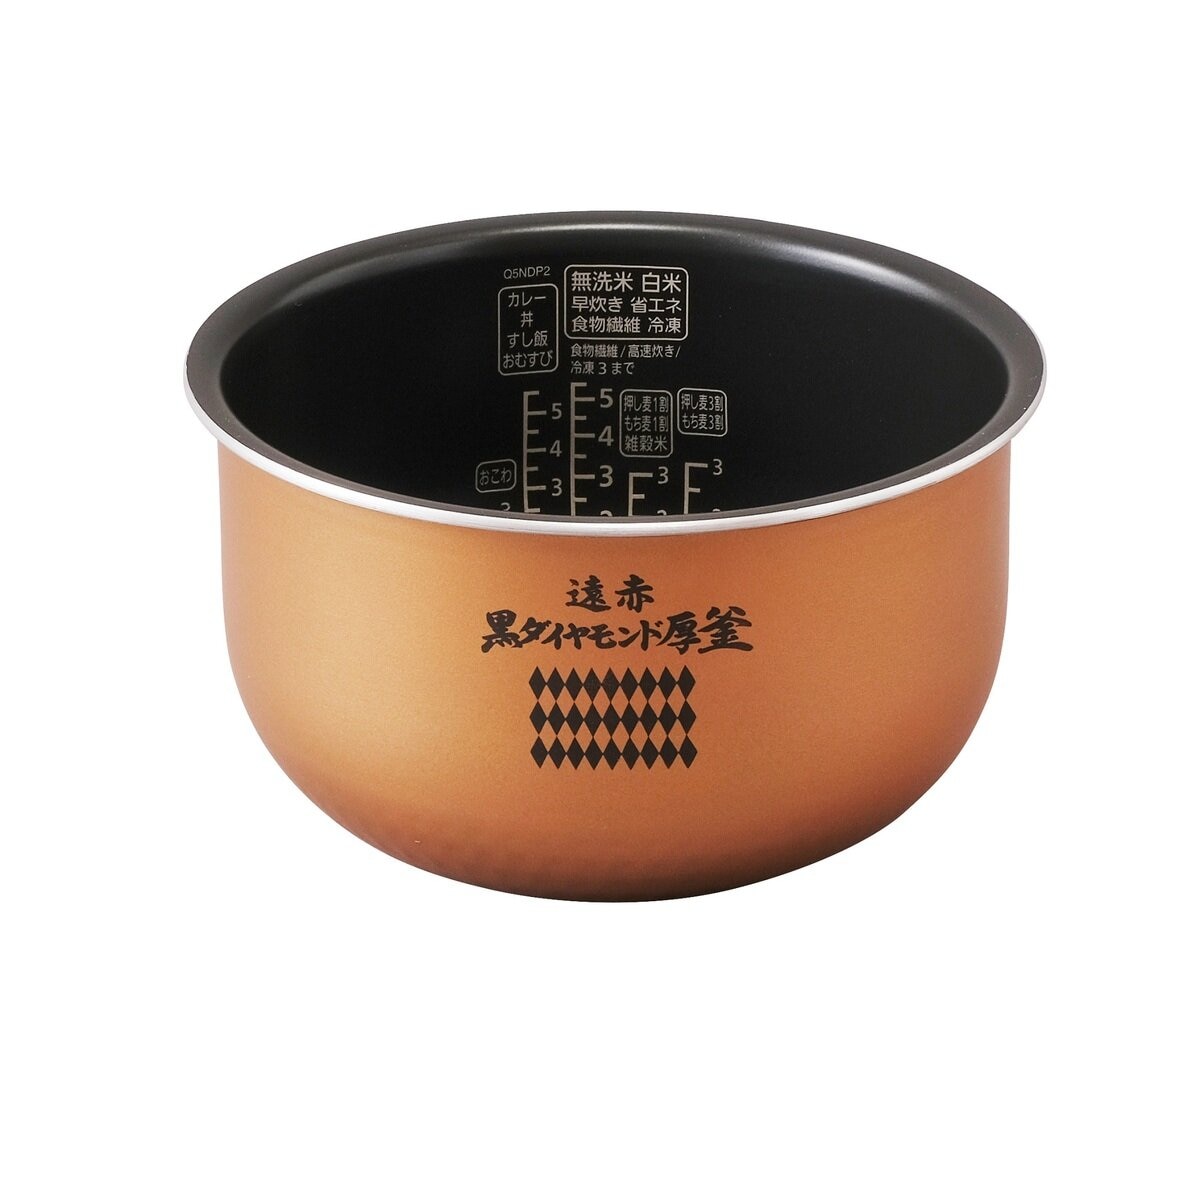 アイリスオーヤマ 圧力IHジャー炊飯器 5.5合 RC-PJ50-B | Costco Japan